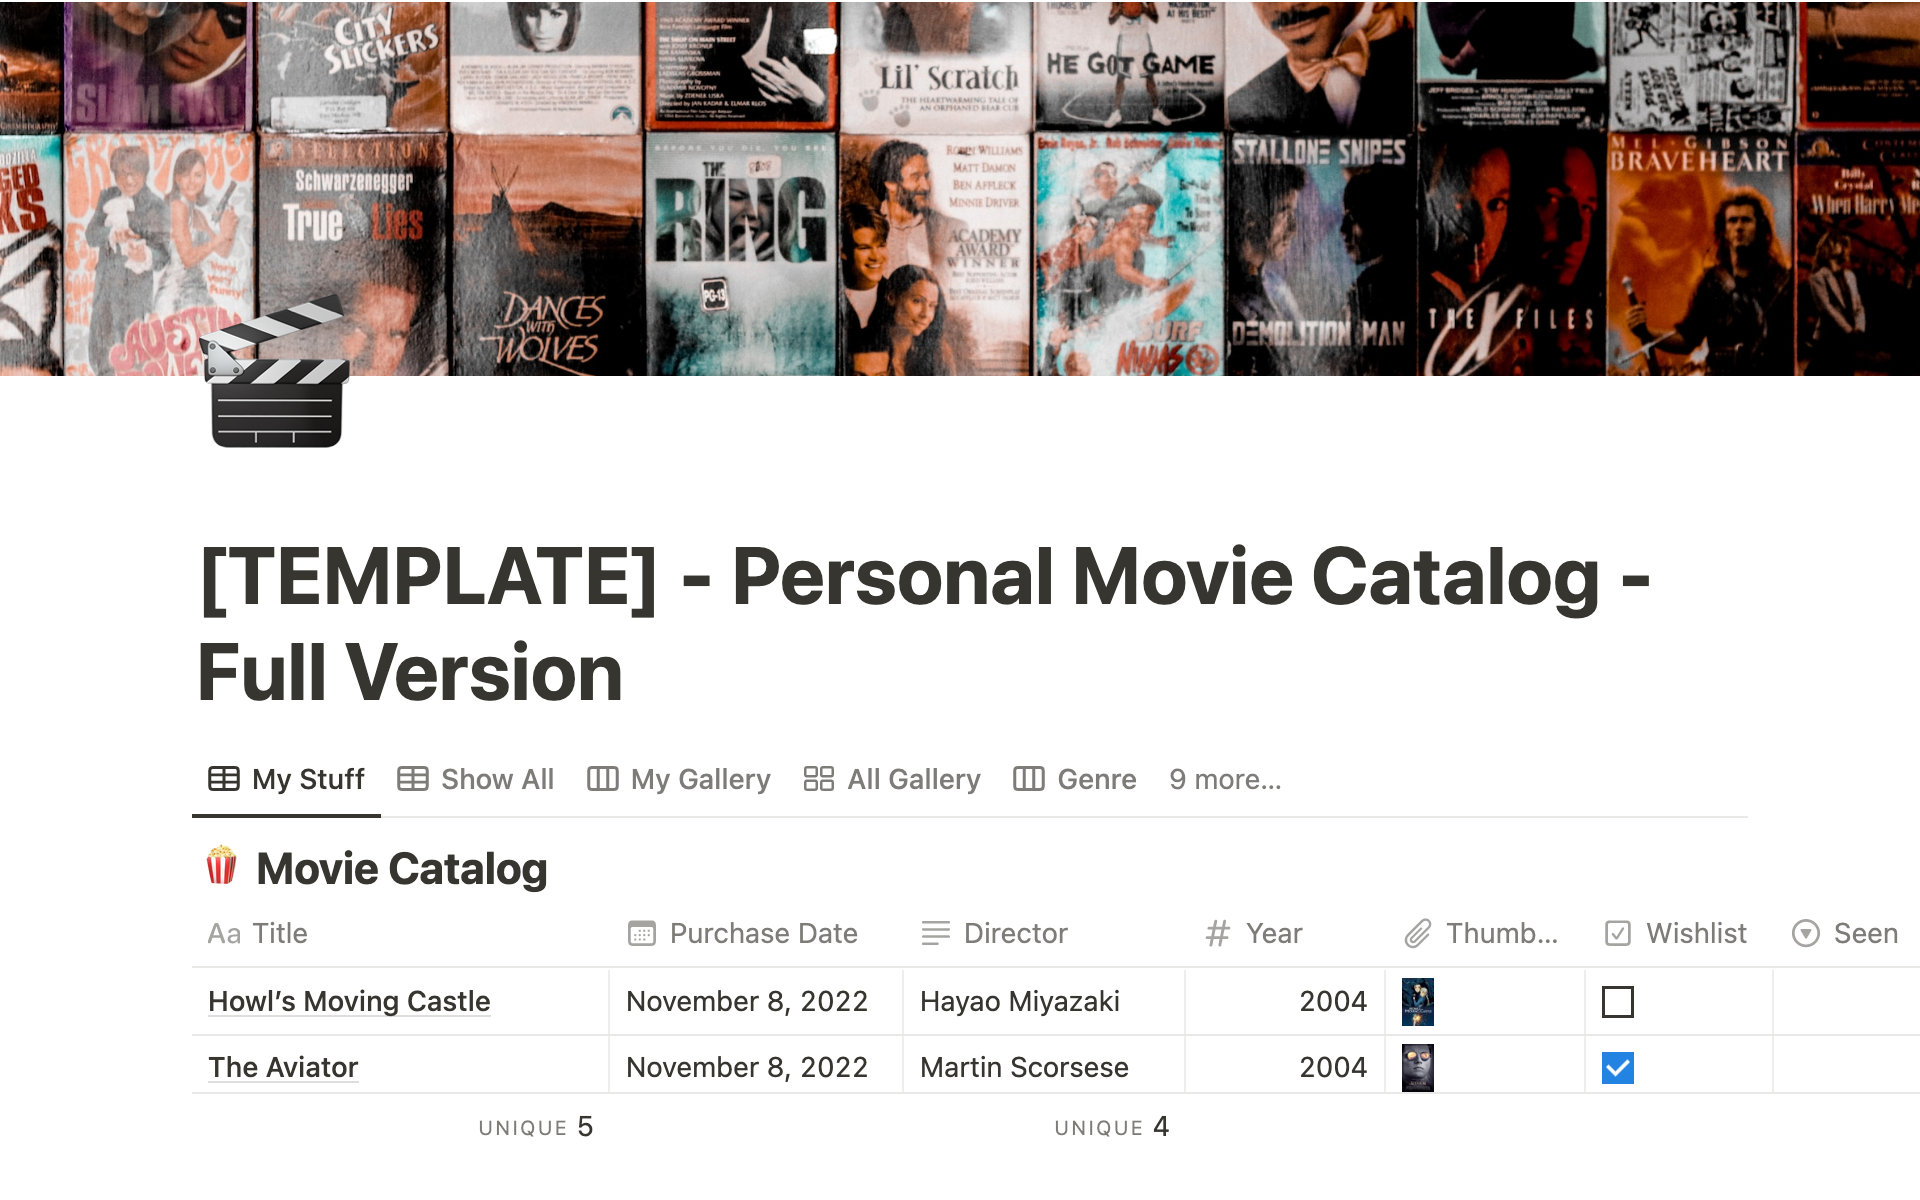 Vista previa de una plantilla para Personal Movie Catalog